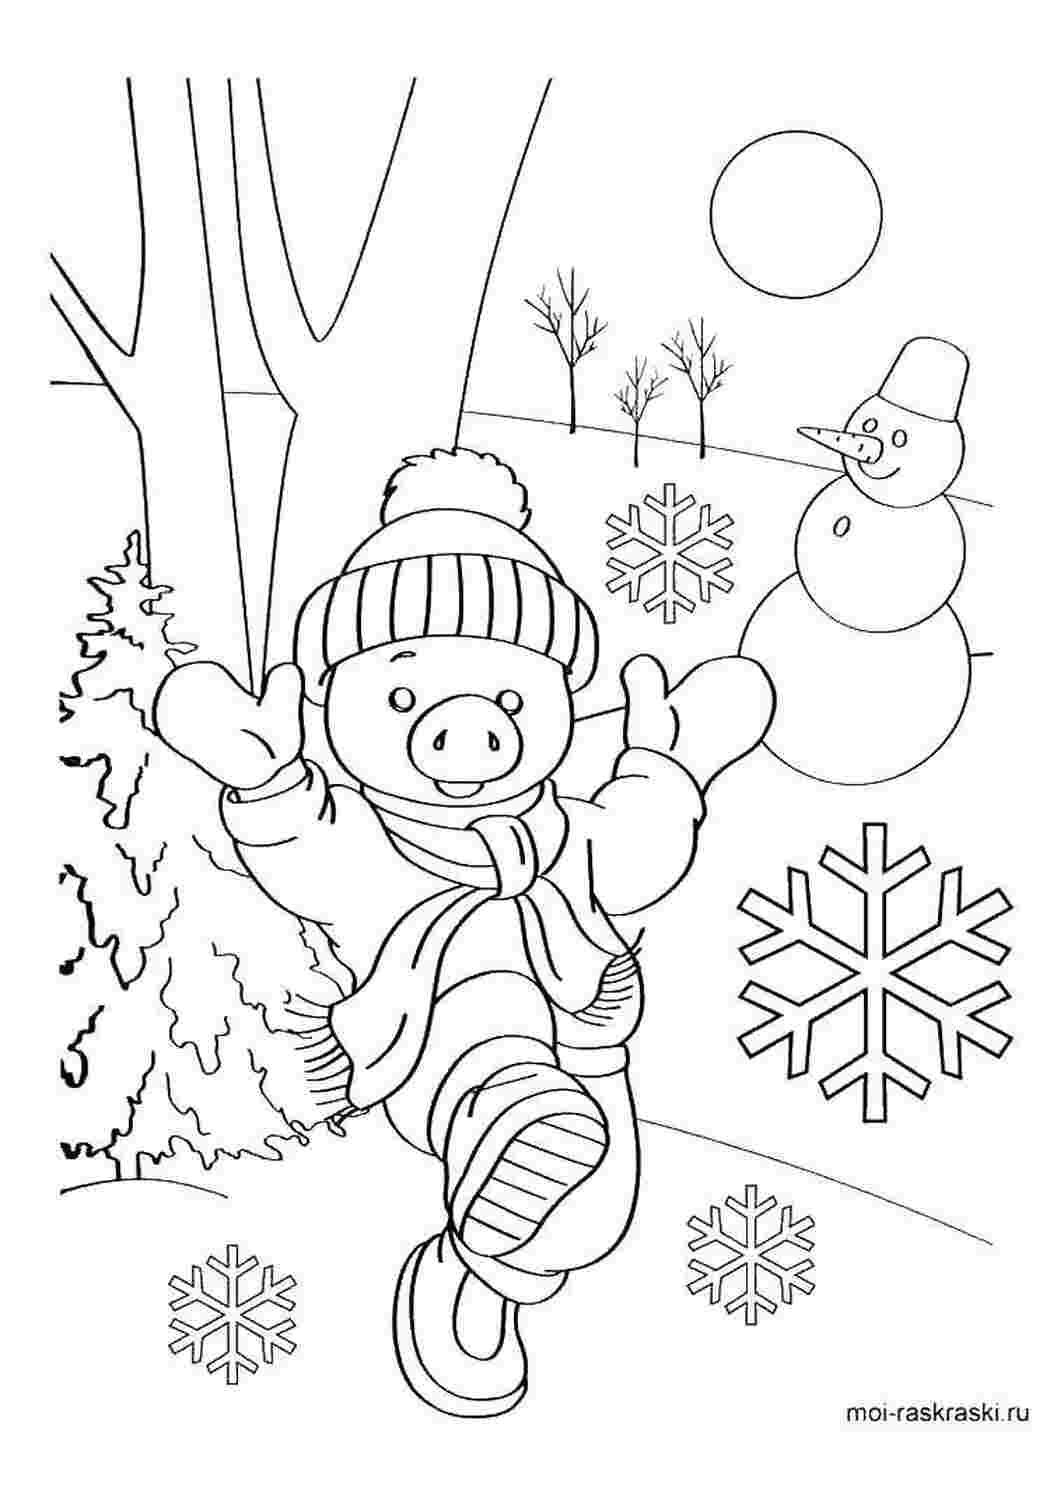 Снежинка рисунок для детей раскраска (44 фото)